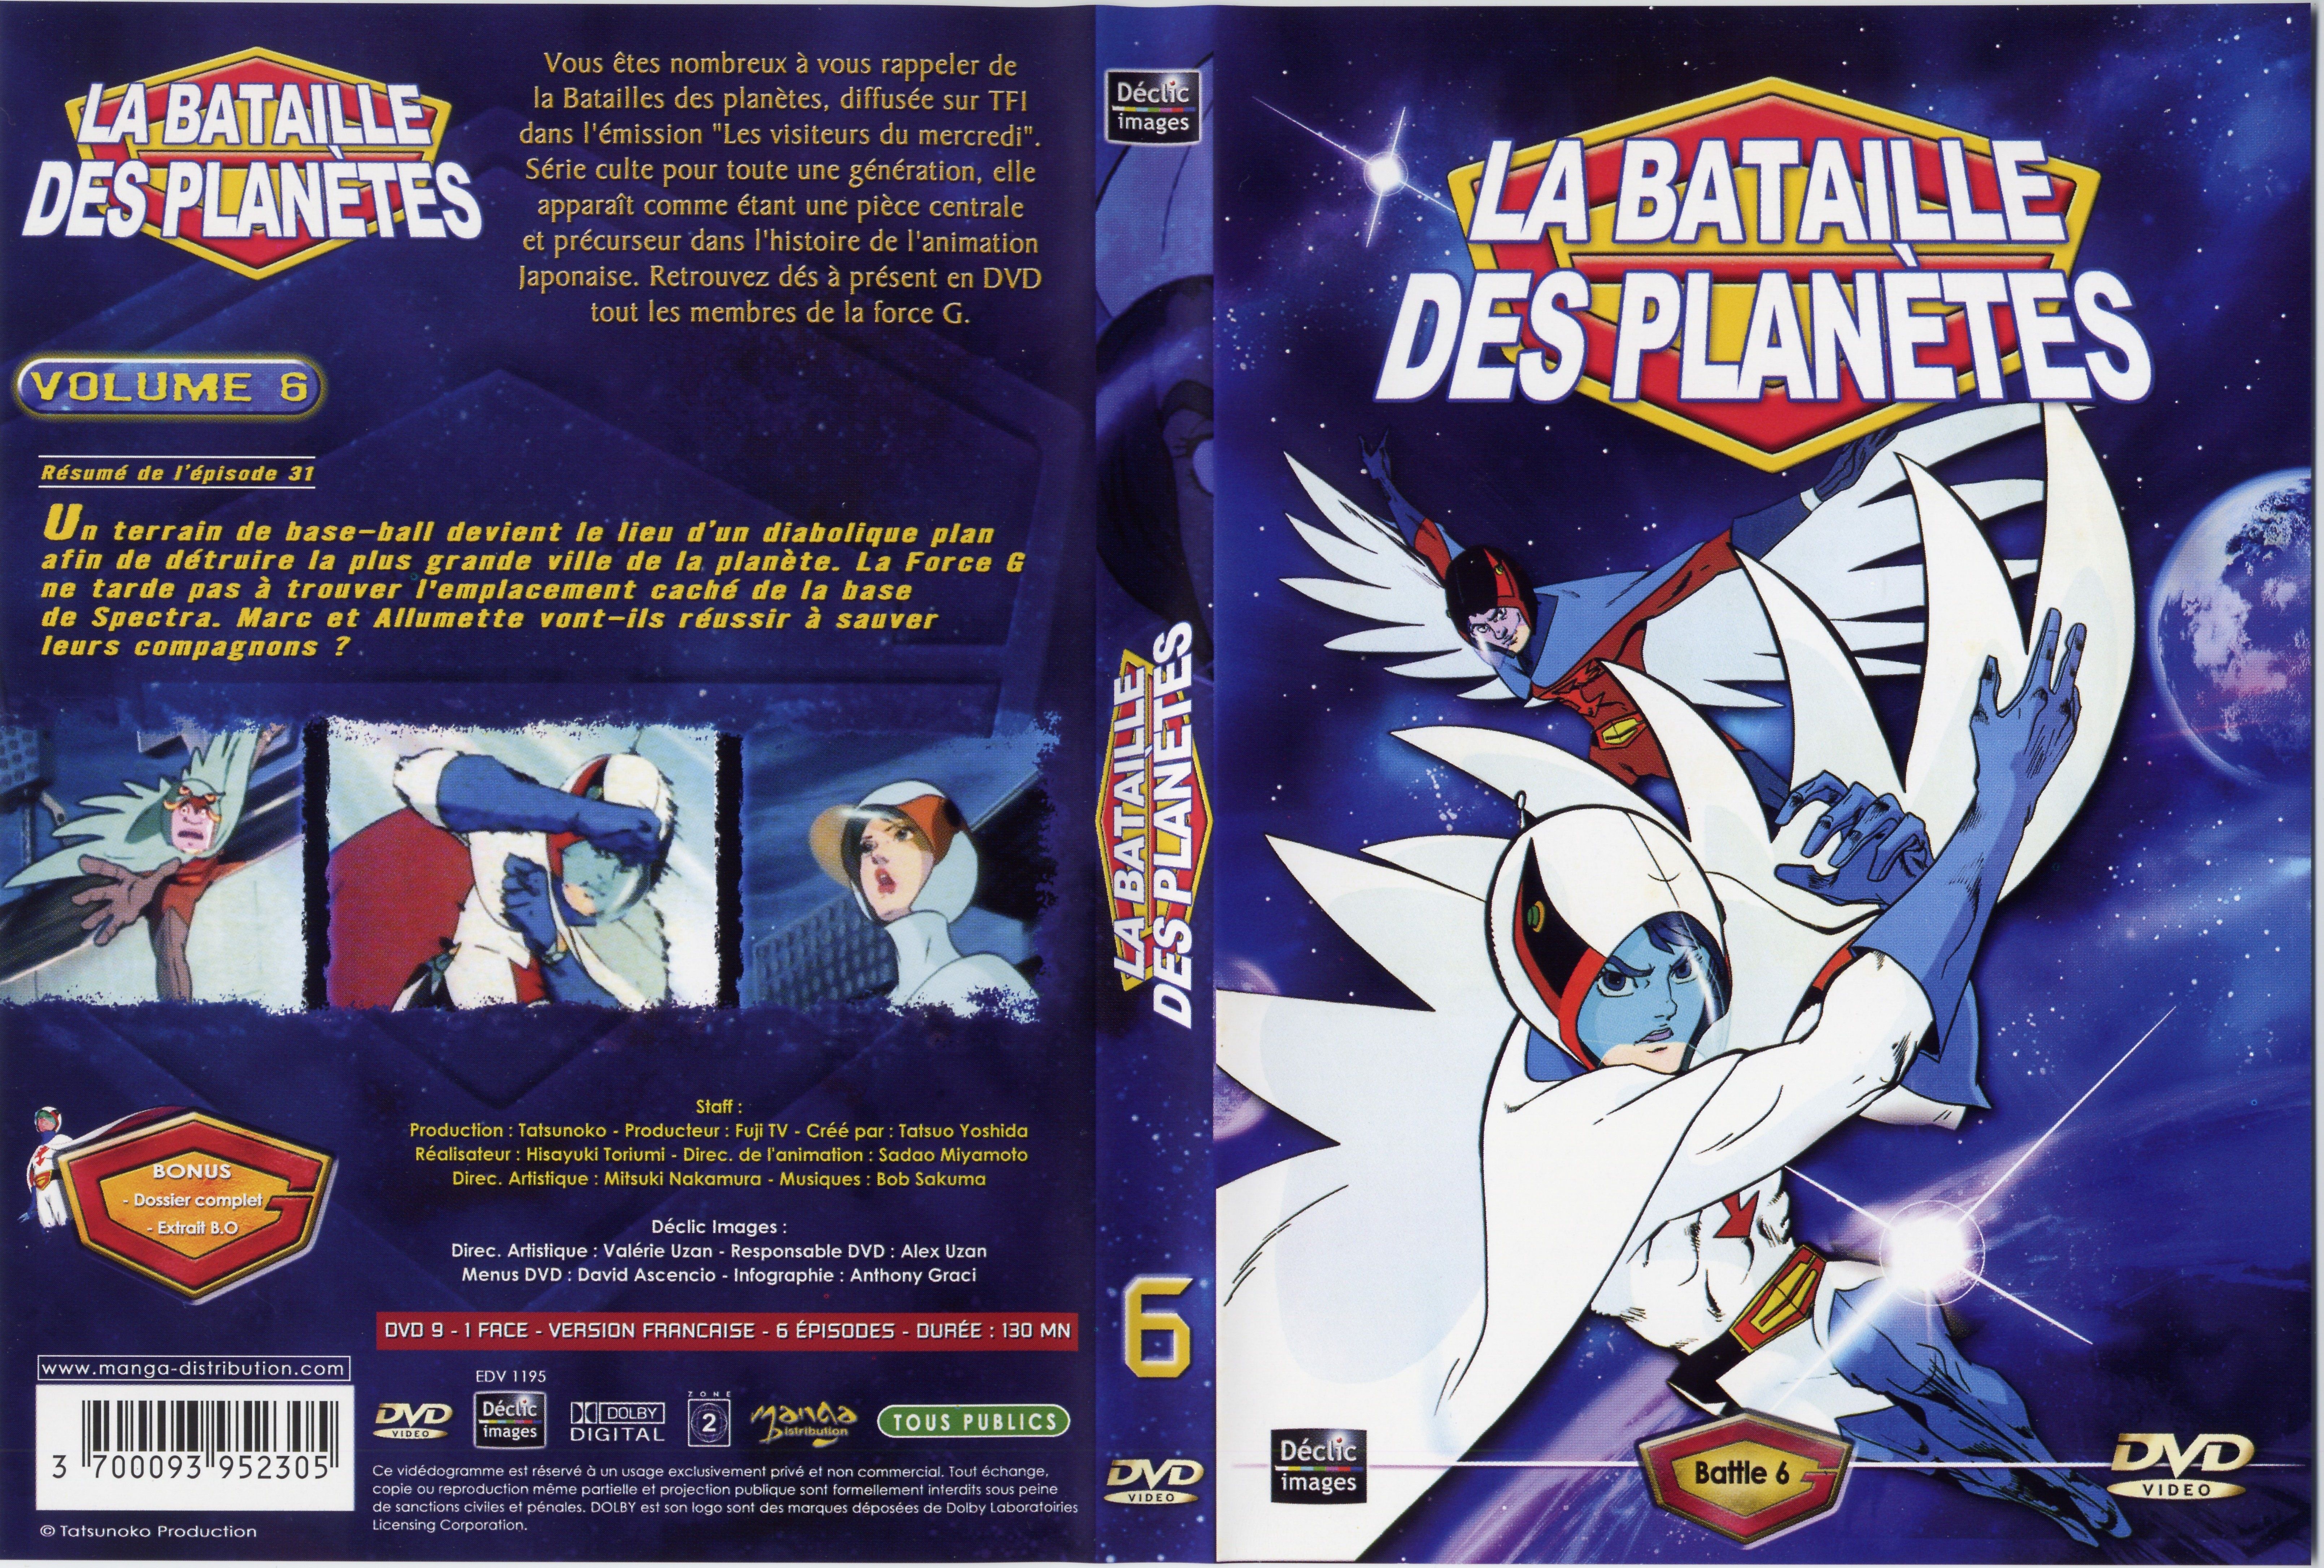 Jaquette DVD La bataille des planetes DVD 06